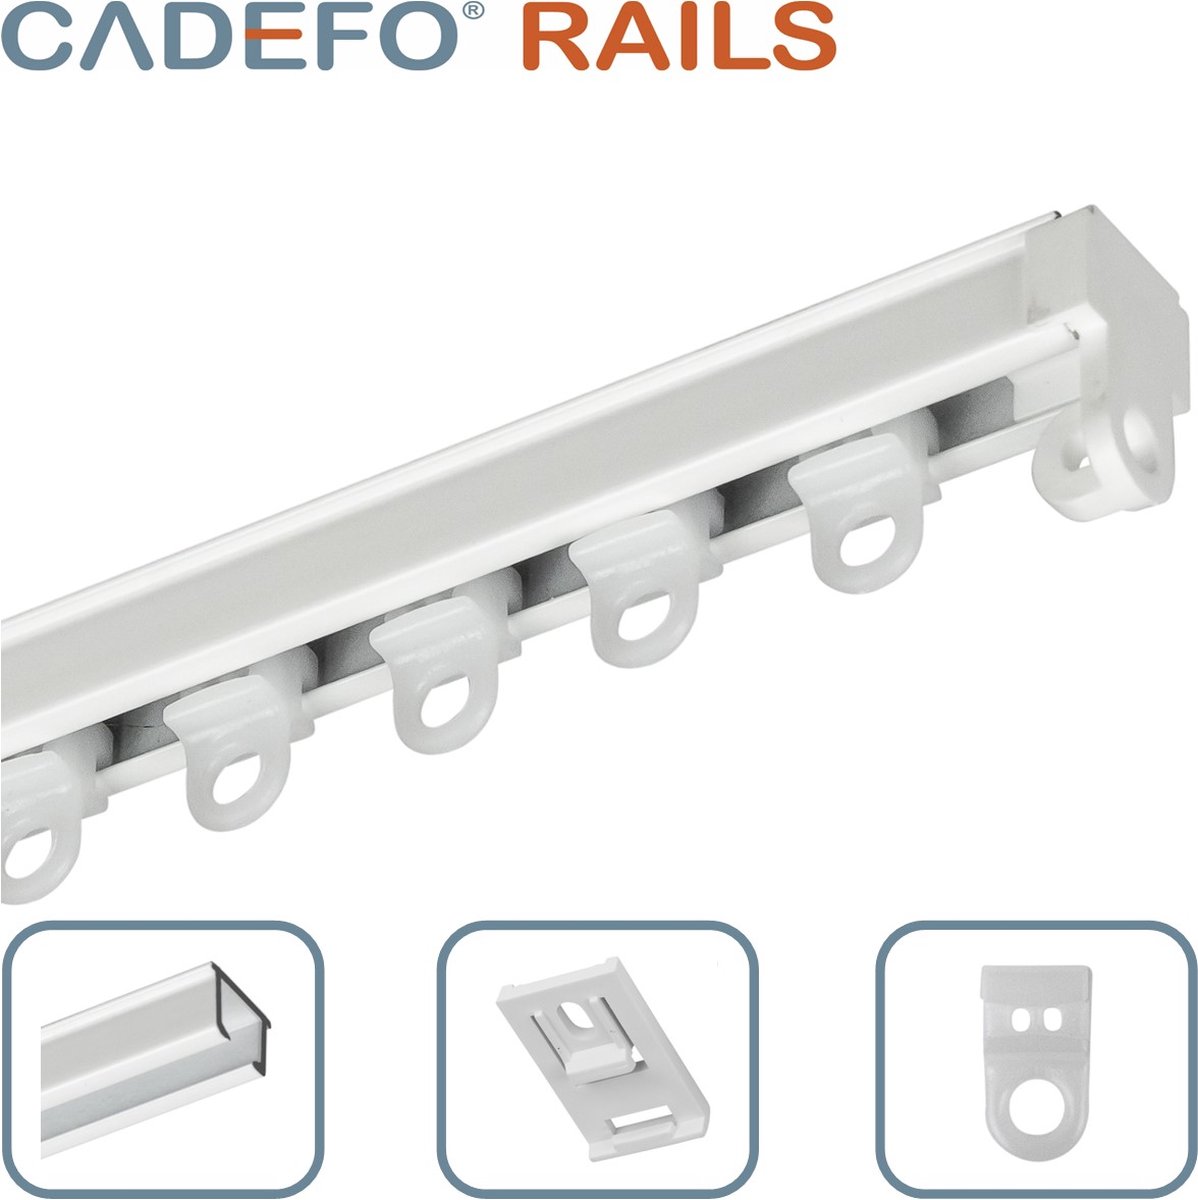 CADEFO RAILS (151 - 200 cm) Gordijnrails - Compleet op maat! - UIT 1 STUK - Leverbaar tot 6 meter - Plafondbevestiging - Lengte 164 cm